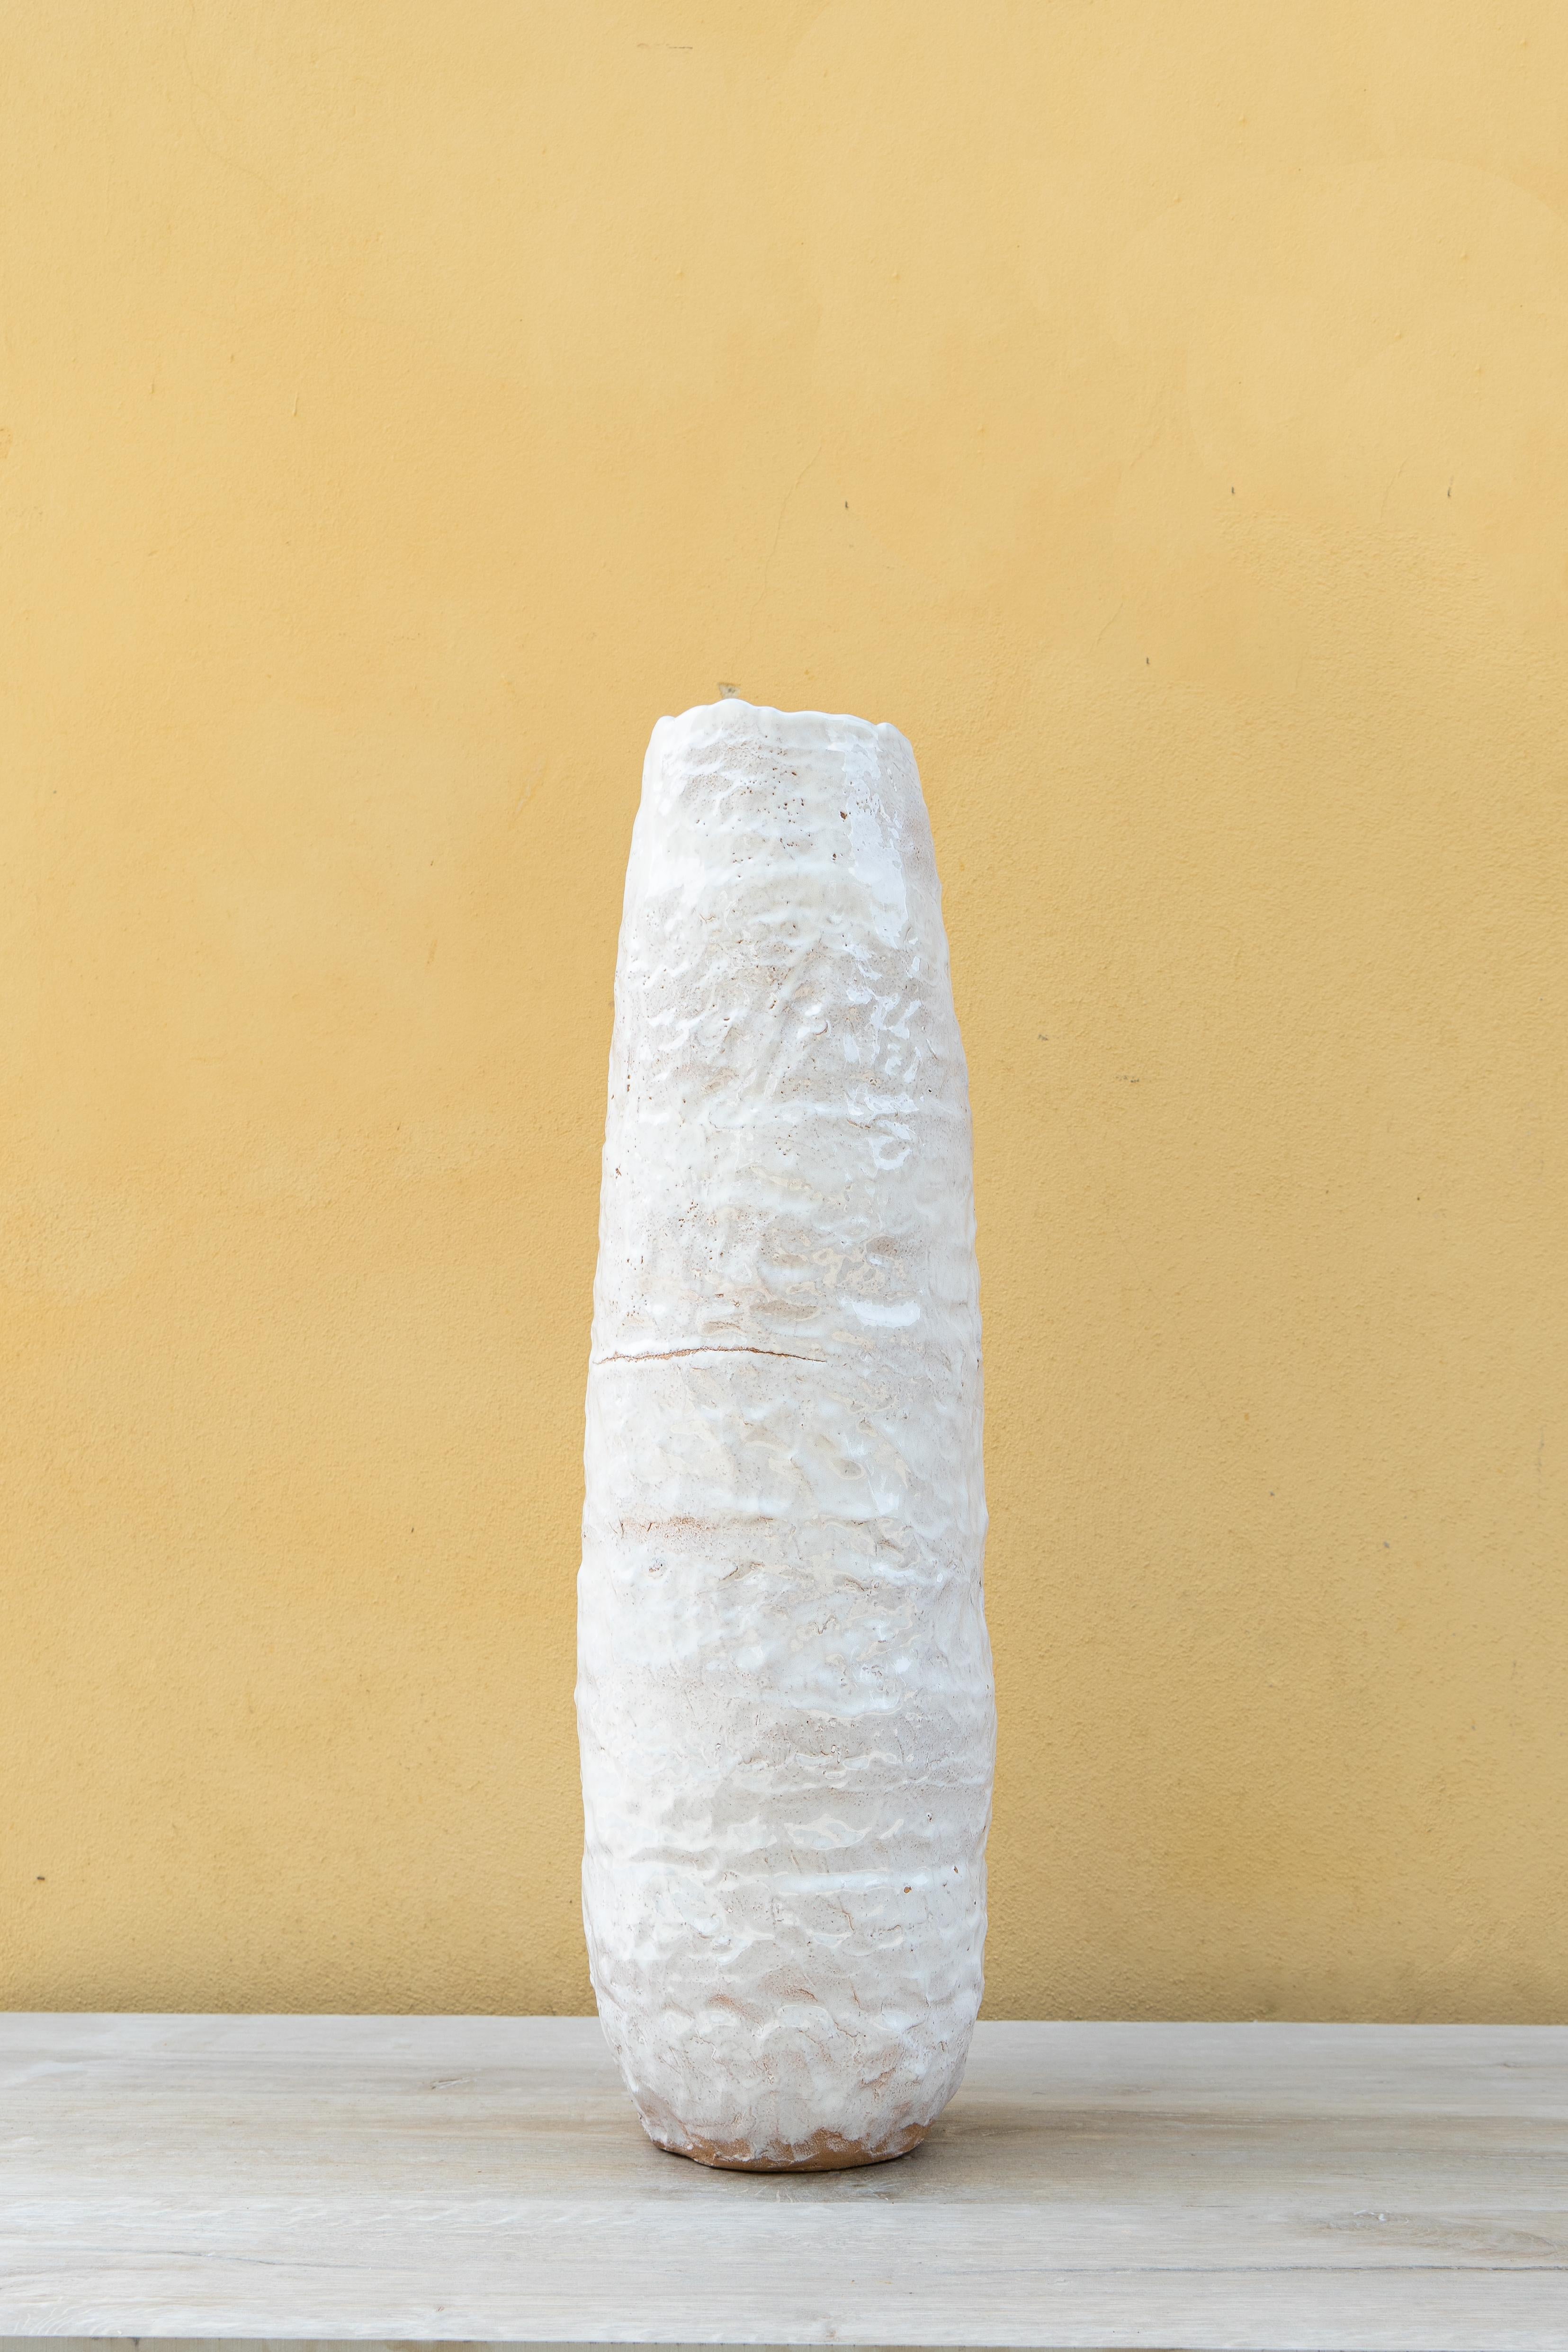 Große weiße Vase von Daniele Giannetti.
Abmessungen: Ø 21 x H 71 cm.
MATERIALIEN: Terrakotta glasiert. 

Alle Stücke werden aus Terrakotta aus Montelupo hergestellt, nur einmal gebrannt und dann von Daniele Giannetti mit einer weißen Acrylbasis